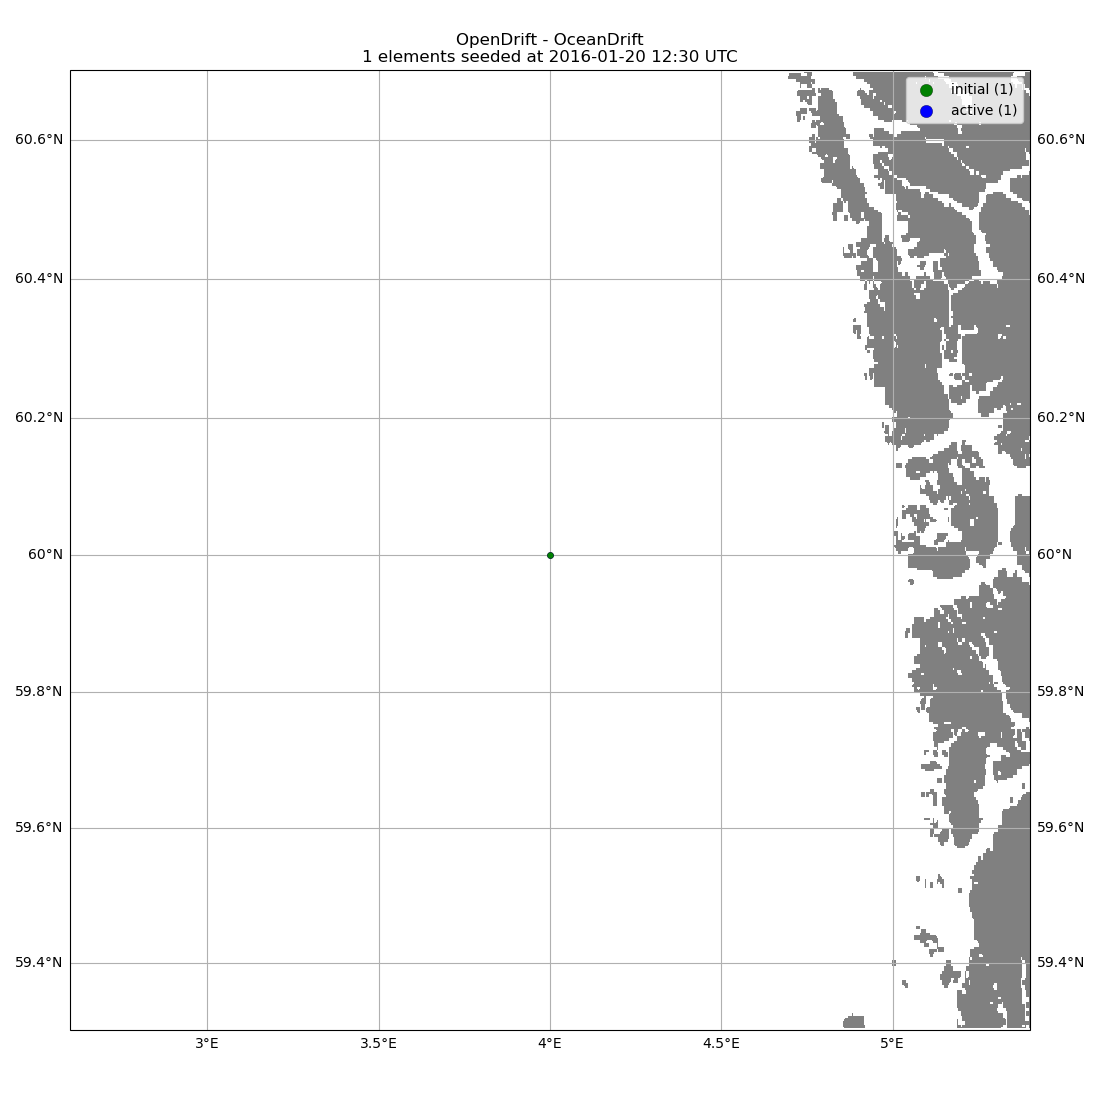 OpenDrift - OceanDrift 1 elements seeded at 2016-01-20 12:30 UTC